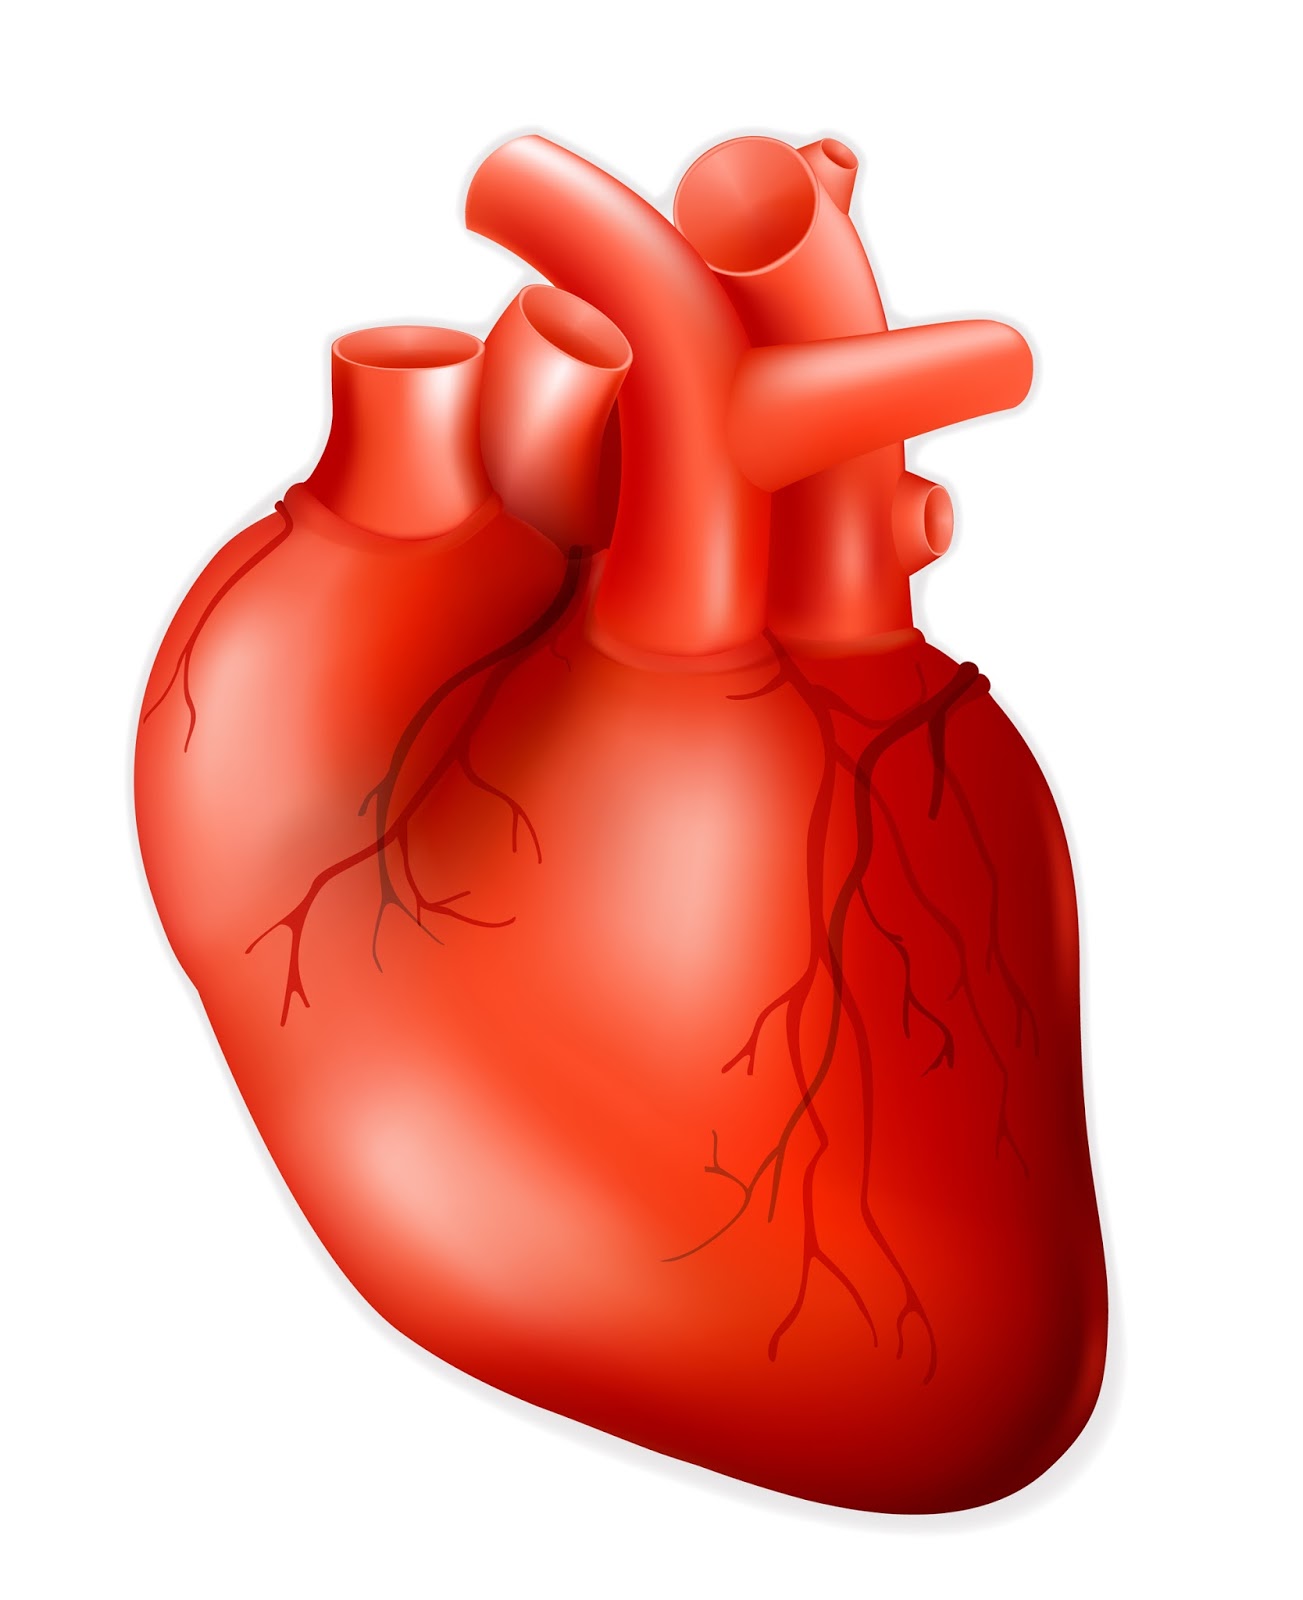 Human Heart Heart Pacemaker #ZJnadN.